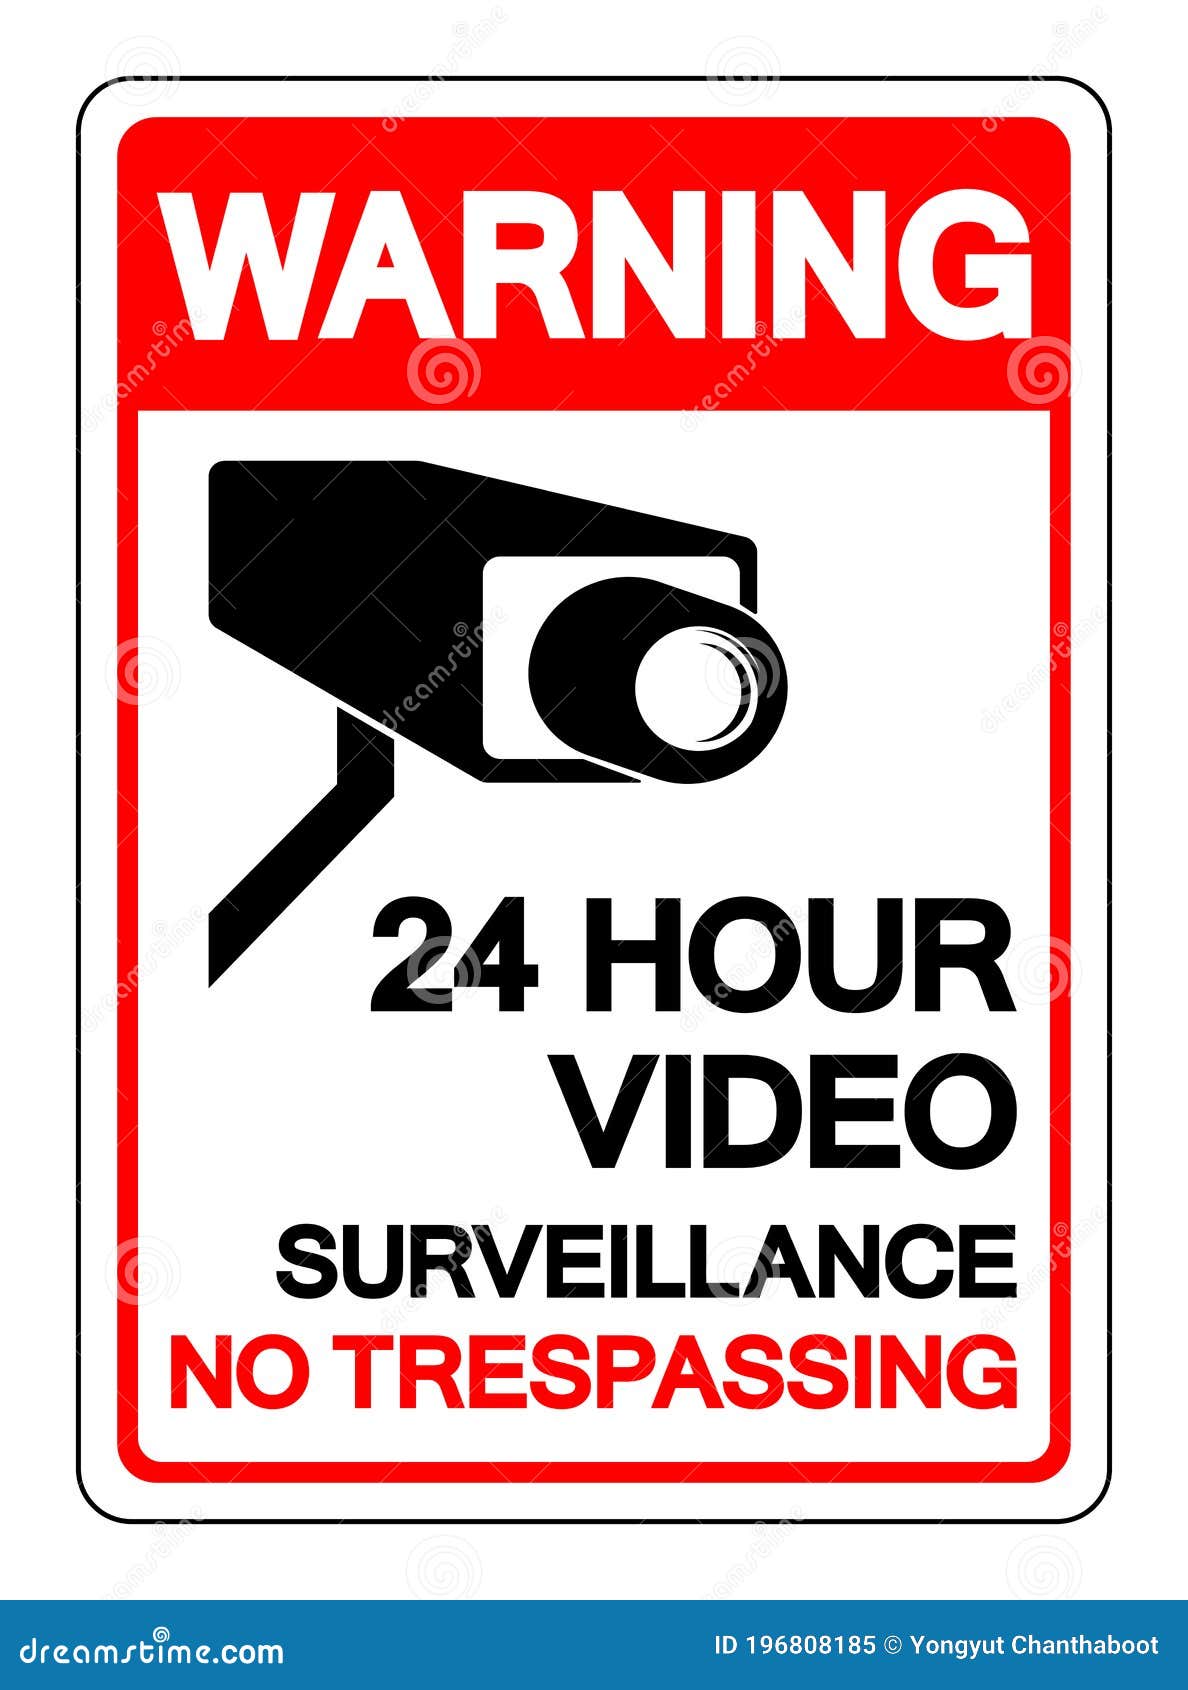 Biểu tượng cấm xâm nhập giám sát video 24 giờ là một biểu tượng quan trọng trong việc đảm bảo bảo vệ sự riêng tư và an ninh cho người sử dụng. Bạn đang muốn mua các sản phẩm về giám sát video đáp ứng nhu cầu bảo vệ an ninh của mình? Hãy đến với 24 giờ - nguồn hàng đầu cung cấp các sản phẩm giám sát video chất lượng cao và có tính năng đáp ứng nhu cầu bảo vệ an ninh một cách tối đa.